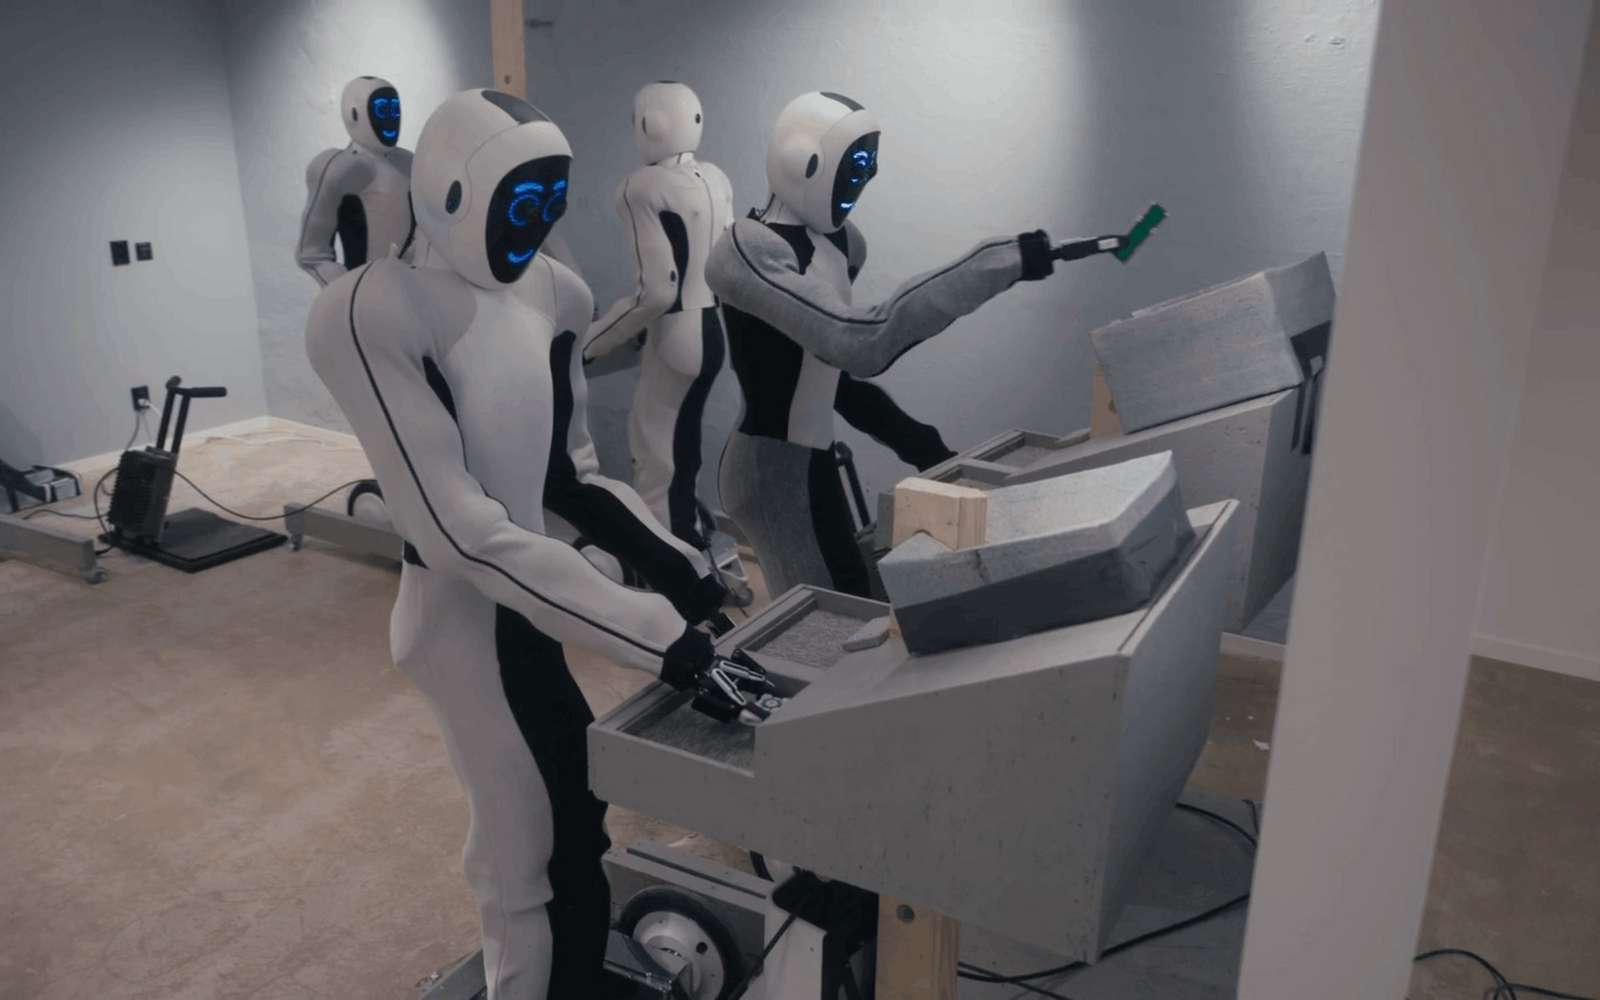 Regardez les robots humanoïdes Eve en action dans une vidéo un peu surréaliste